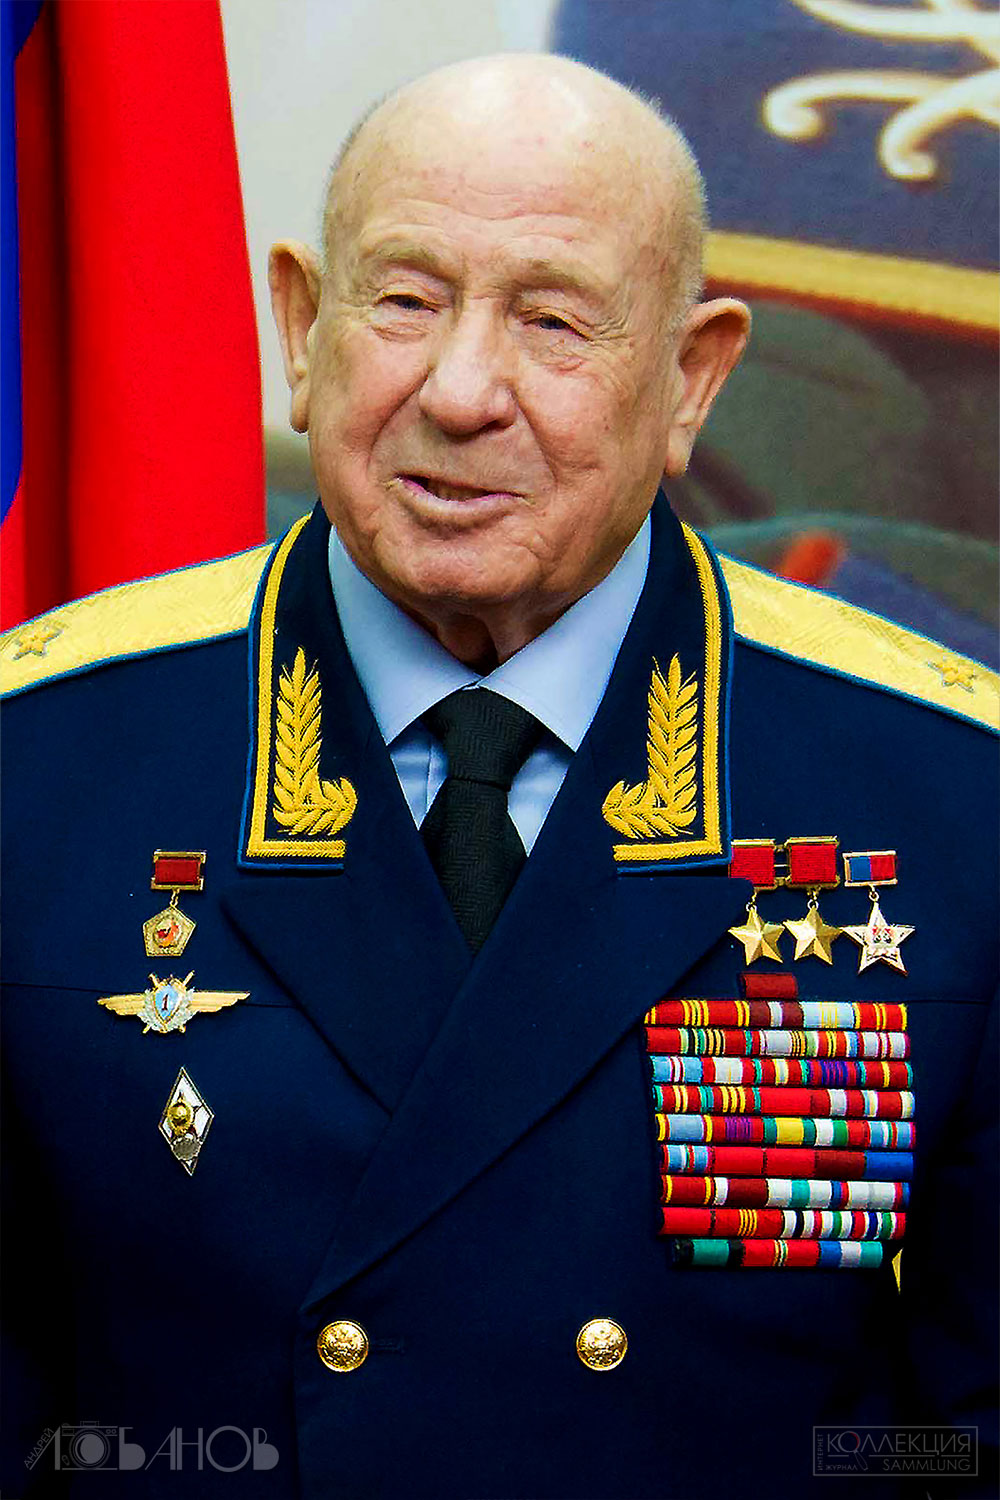 Алексей Архипович Леонов (1934 — 2019), лётчик-космонавт, дважды Герой Советского Союза. Фото Андрея Лобанова